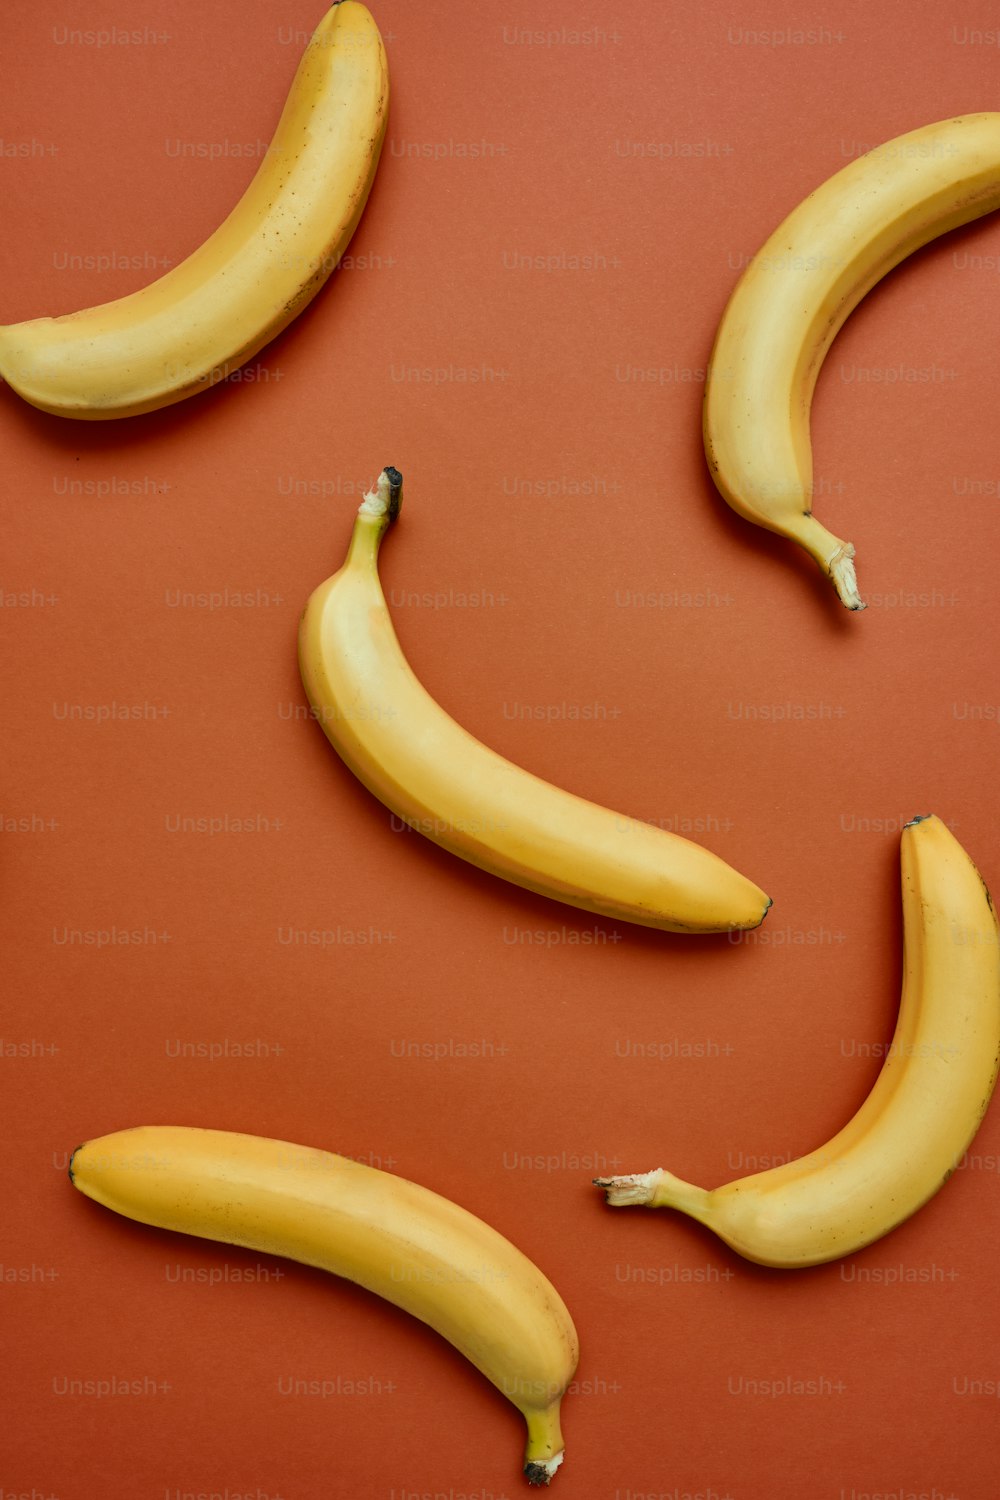 Un groupe de trois bananes assis sur une table rouge